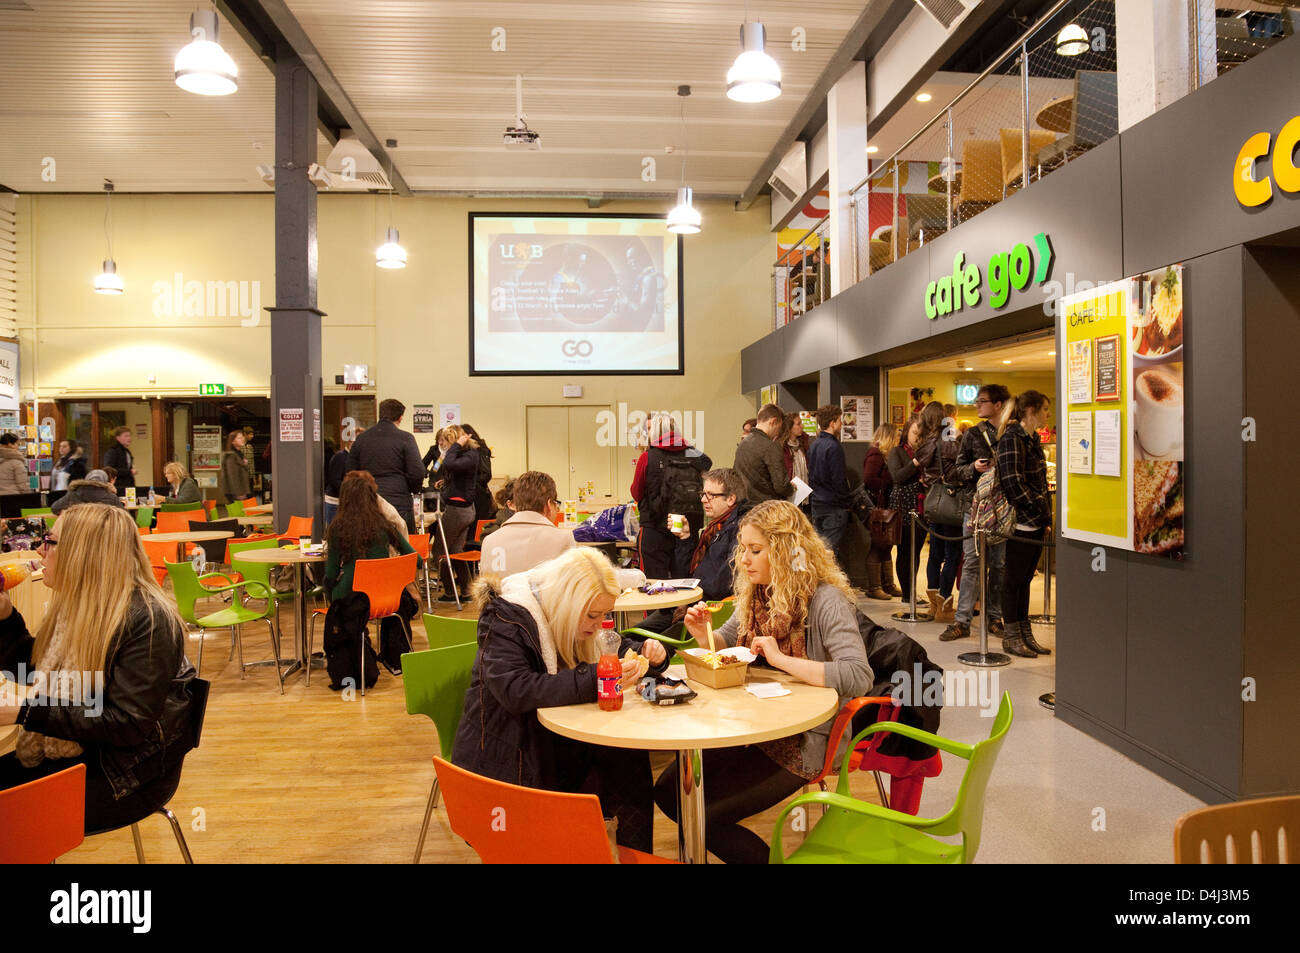 University students sitting eating food in a cafe, Edgbaston Campus, Birmingham University, UK Stock Photo